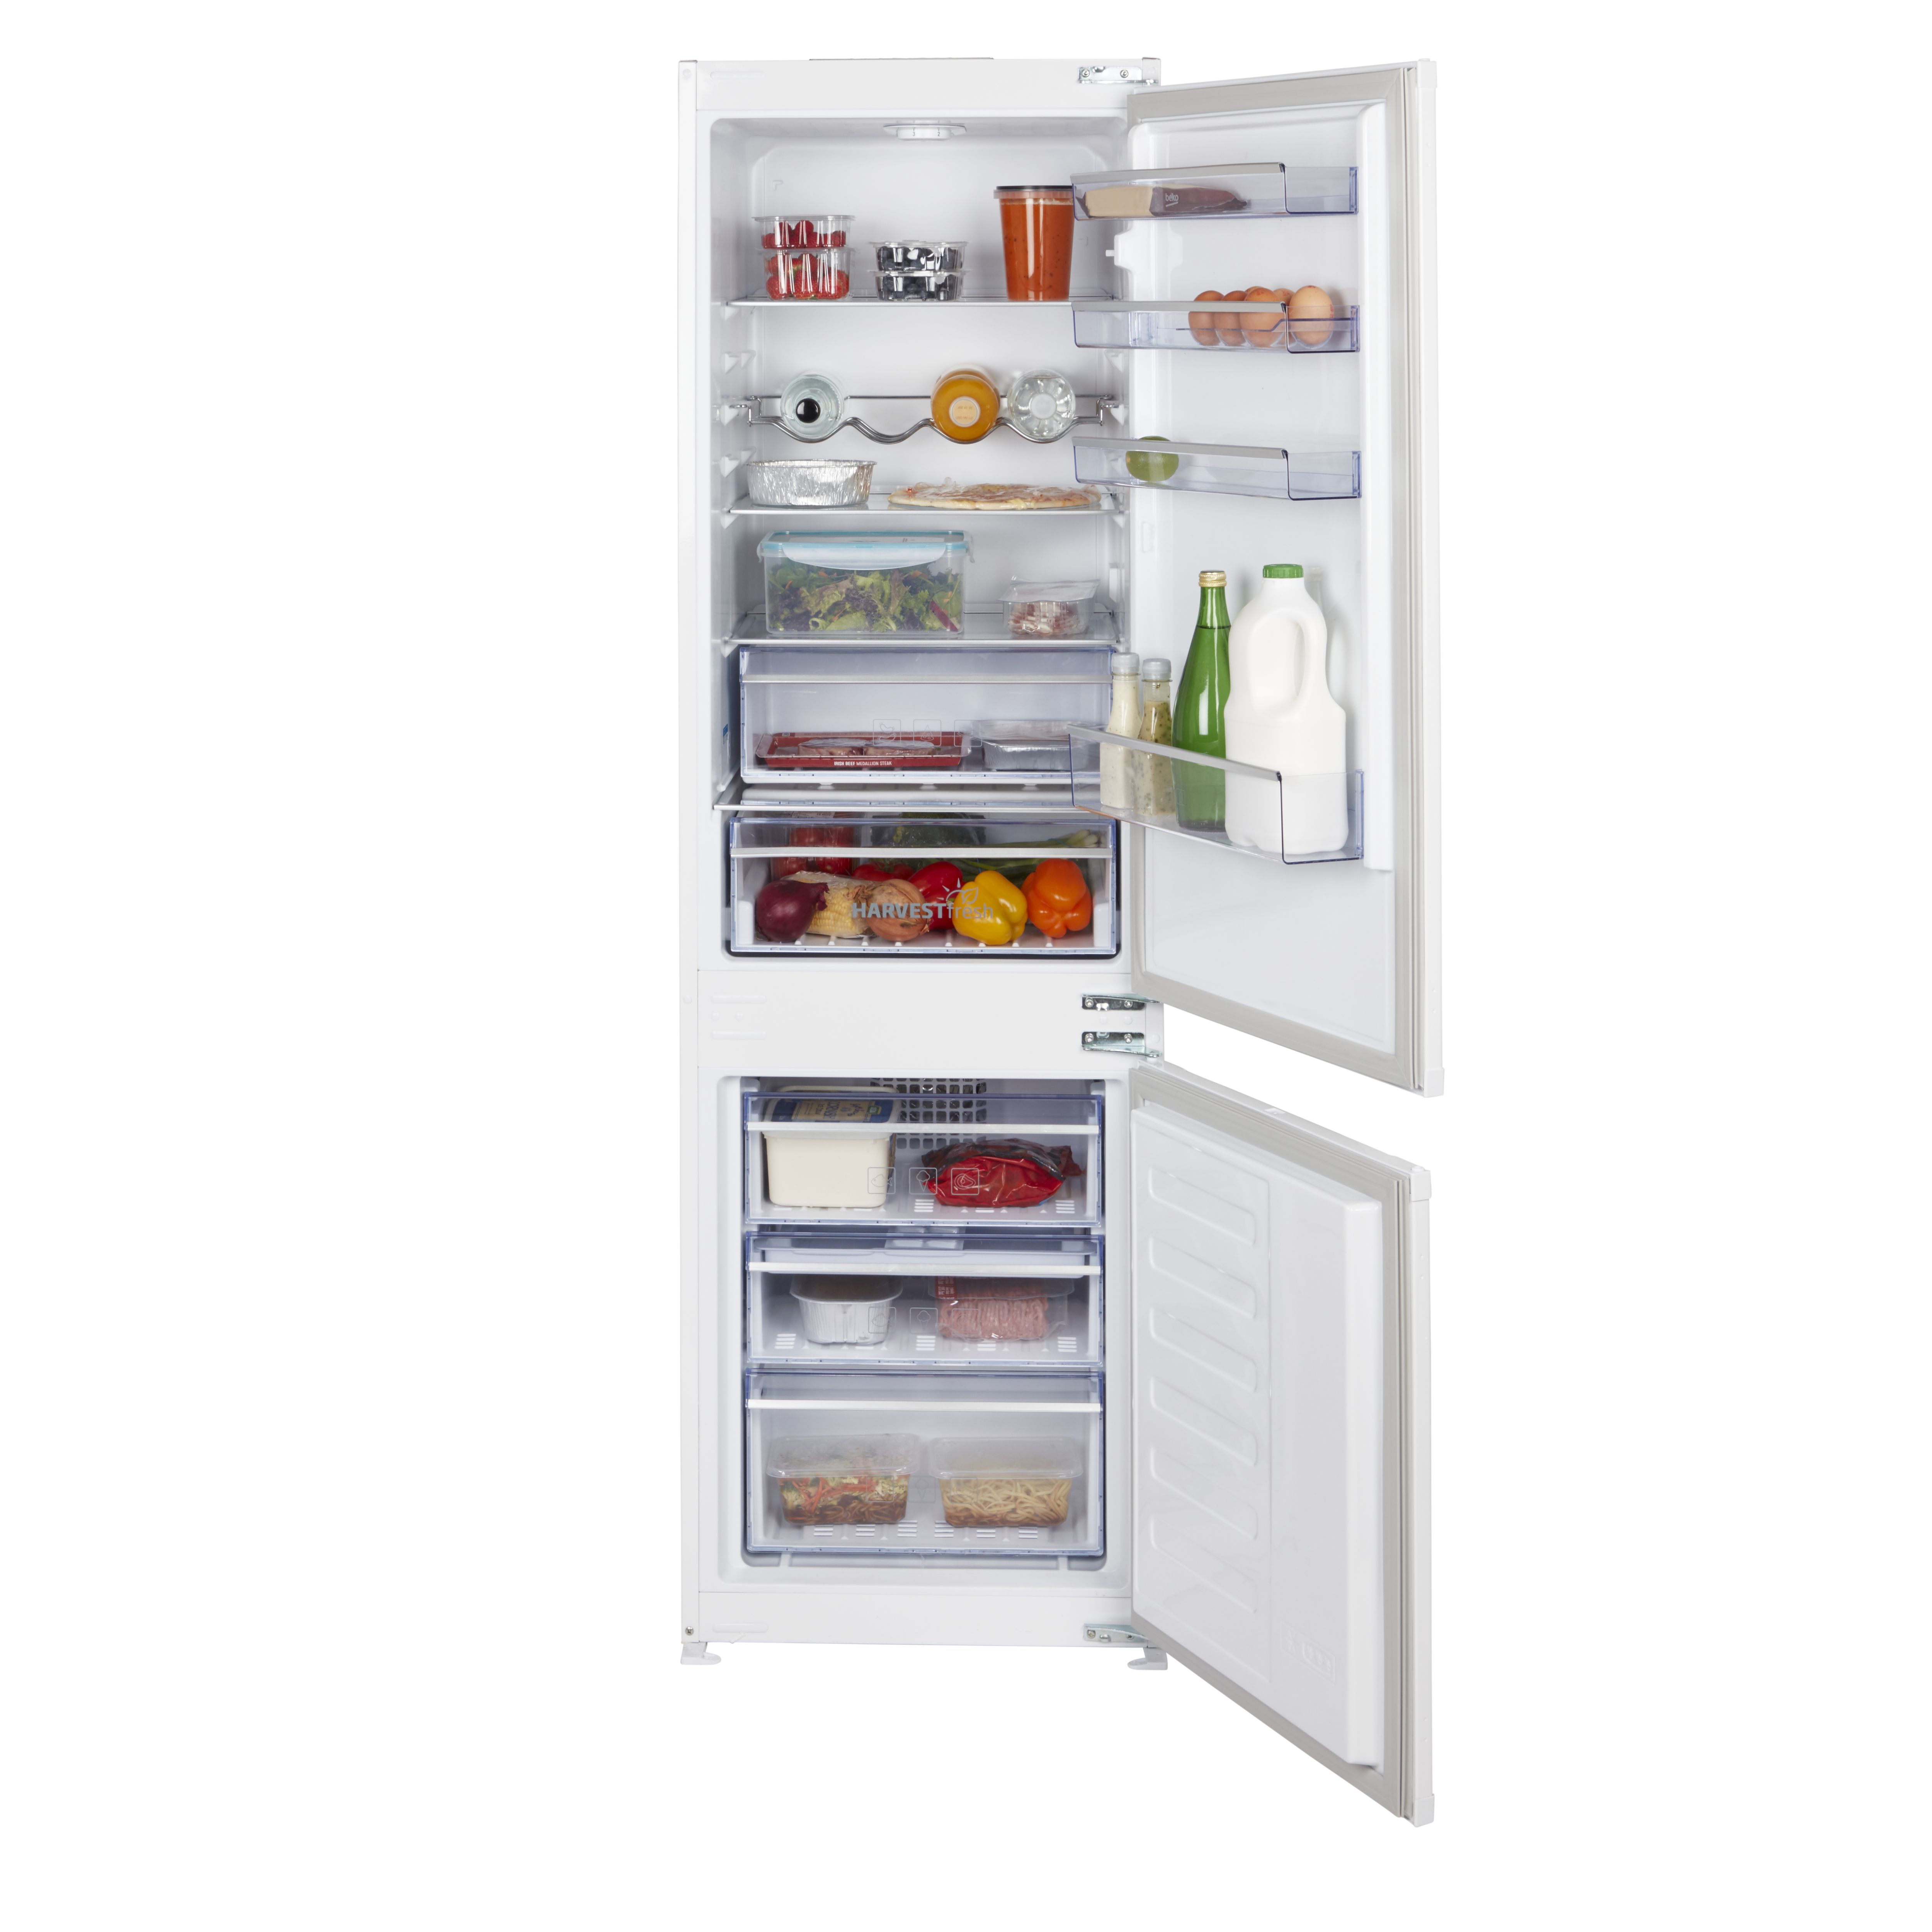 Réfrigérateur congélateur encastrable porte réversible Beko ICQFD373 193L /  69L, blanc